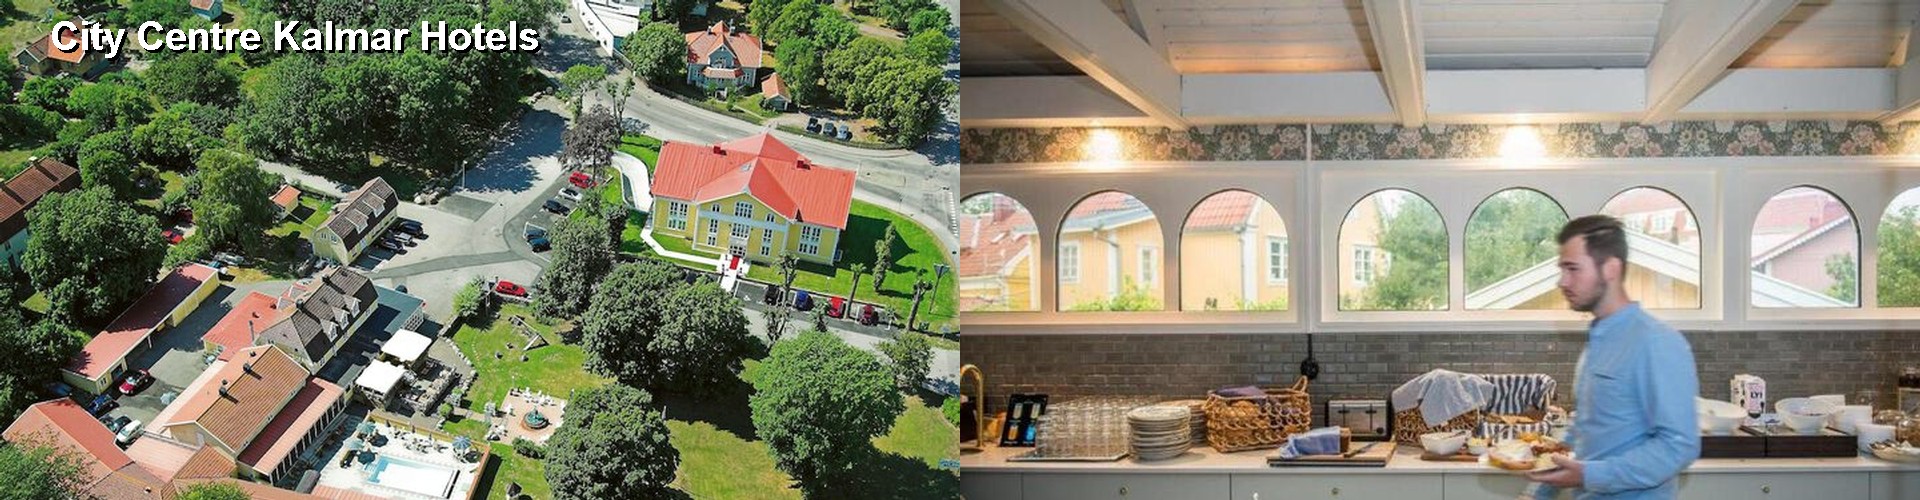 3 Best Hotels near City Centre Kalmar